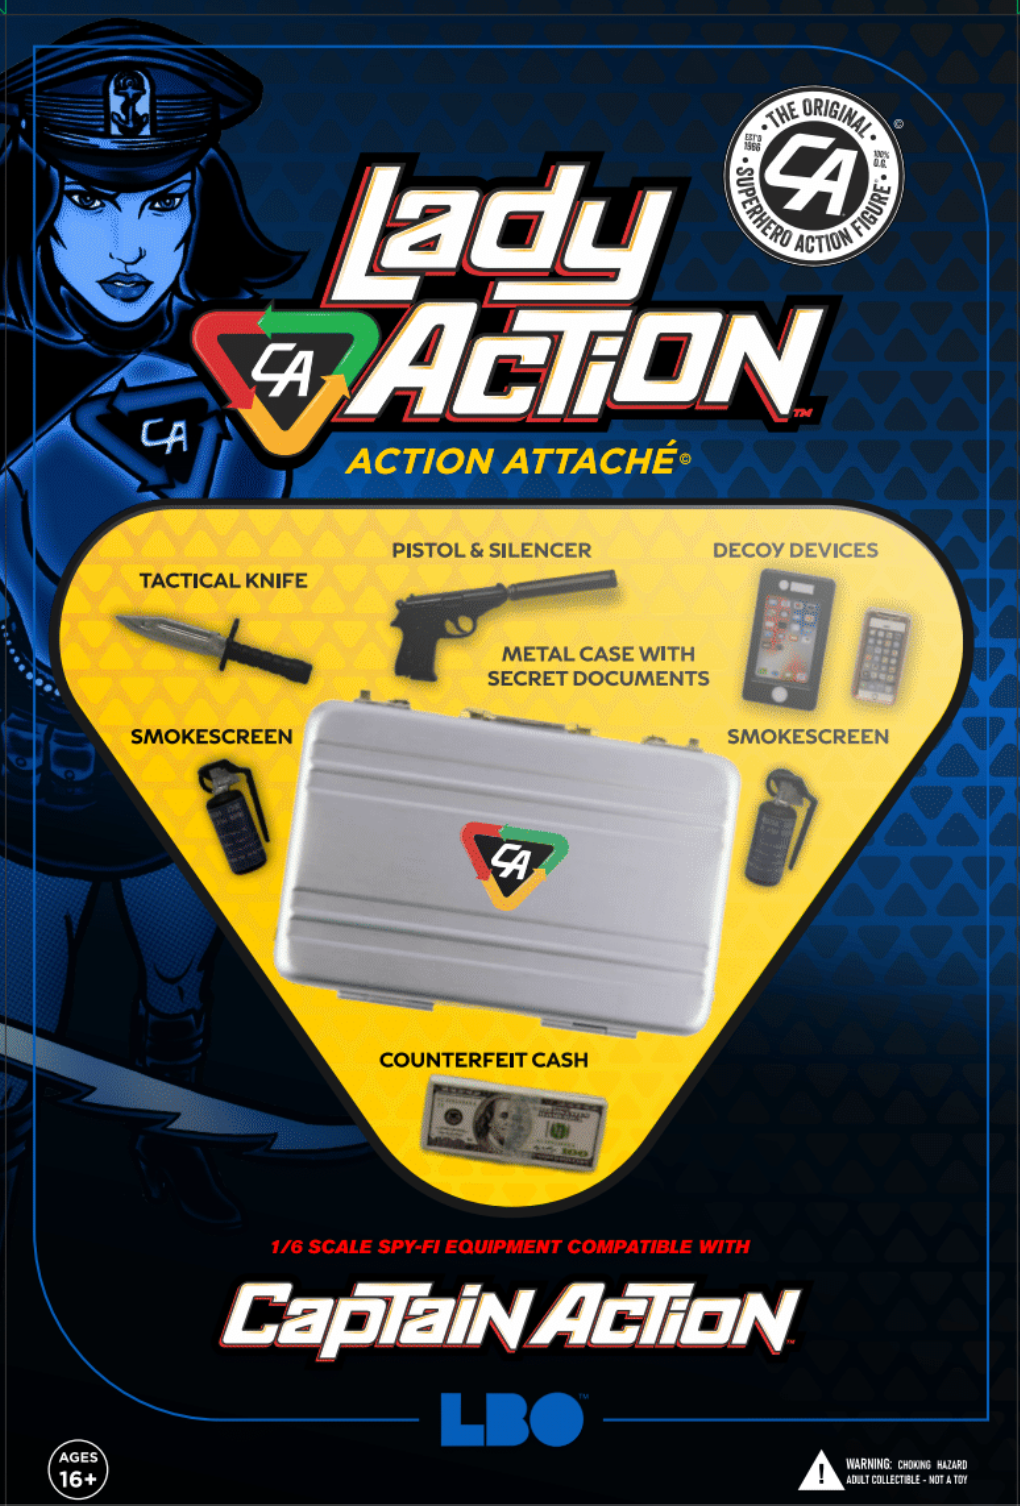 Captain Action: Lady Action Attaché 1/6 Scale Action Figure Accessories